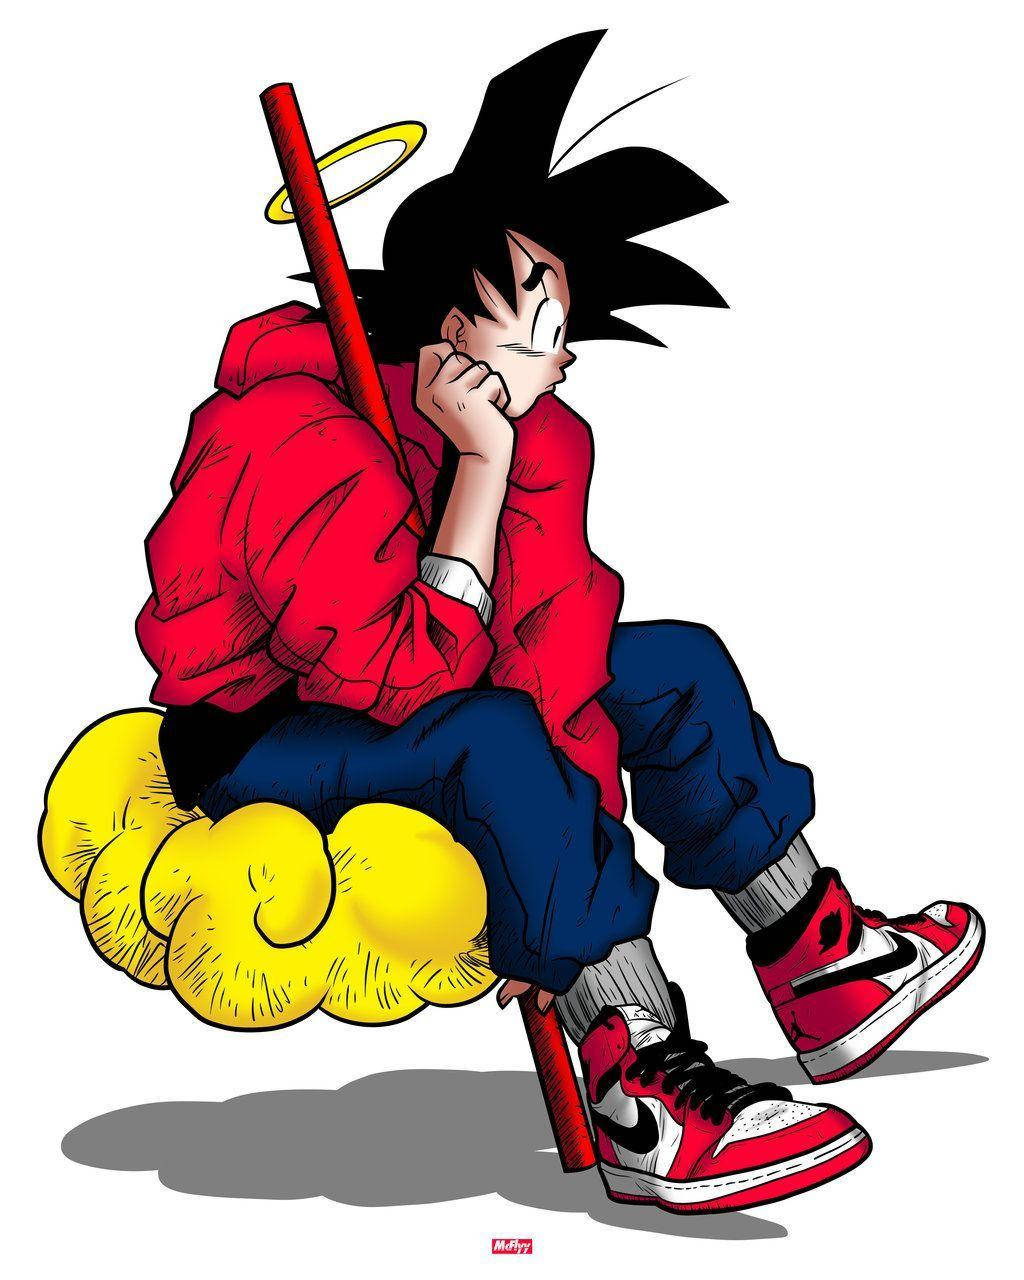 Goku ser skarp ud som altid i hans nye swag! Wallpaper